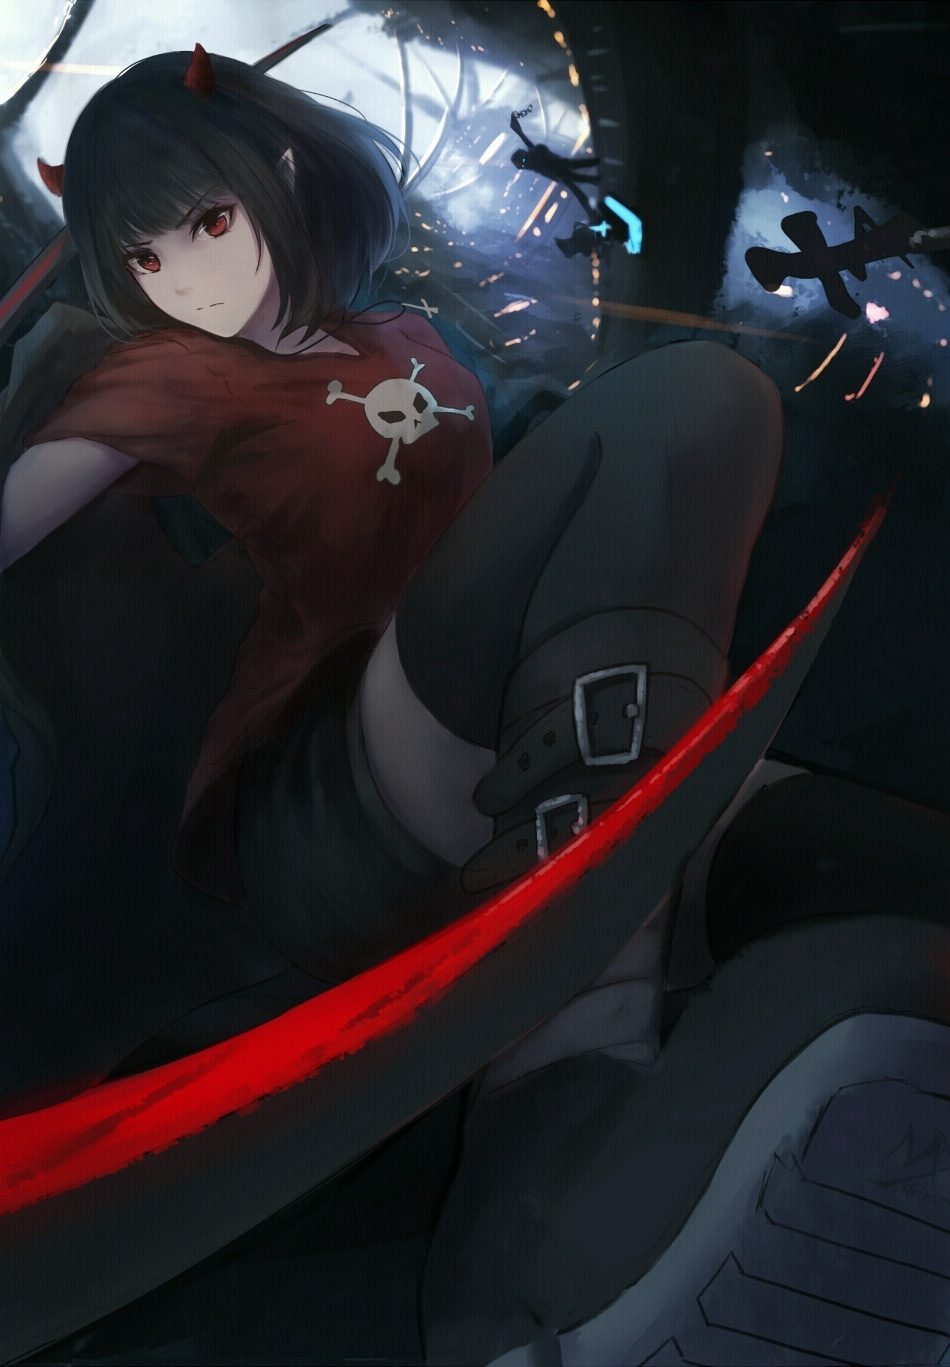 Anime Girl, Fight, Dark, Wallpaper - Anime Fight Wallpaper Full Hd , HD Wallpaper & Backgrounds